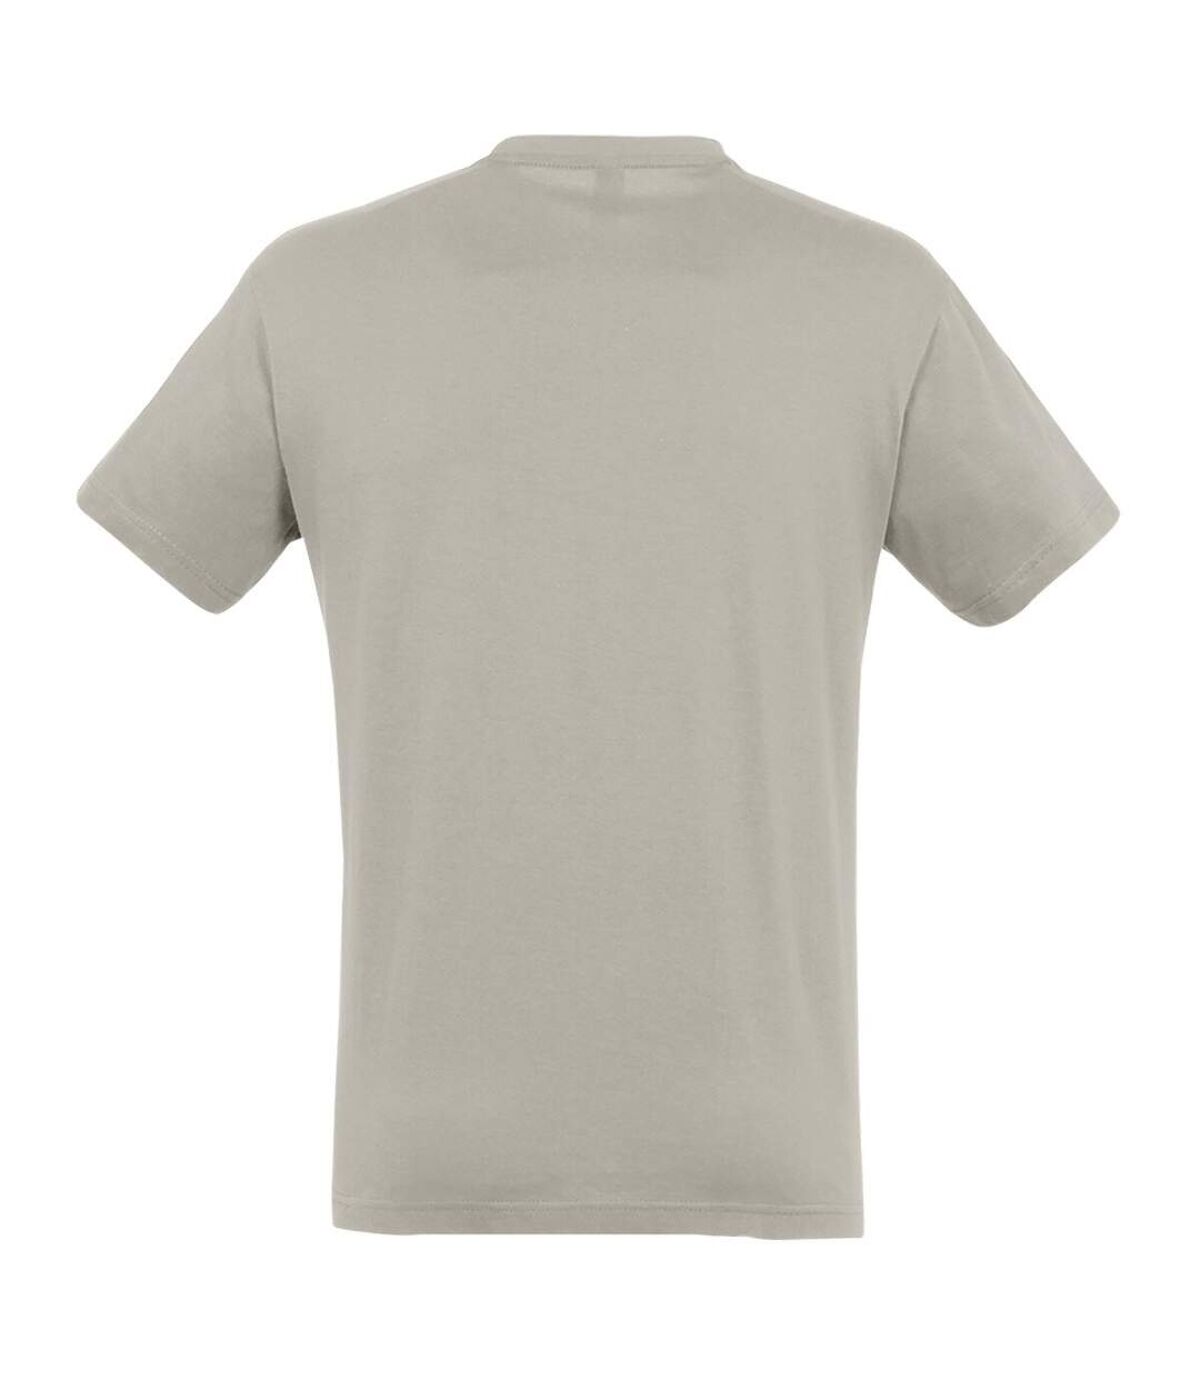 SOLS - T-shirt REGENT - Homme (Gris clair) - UTPC288